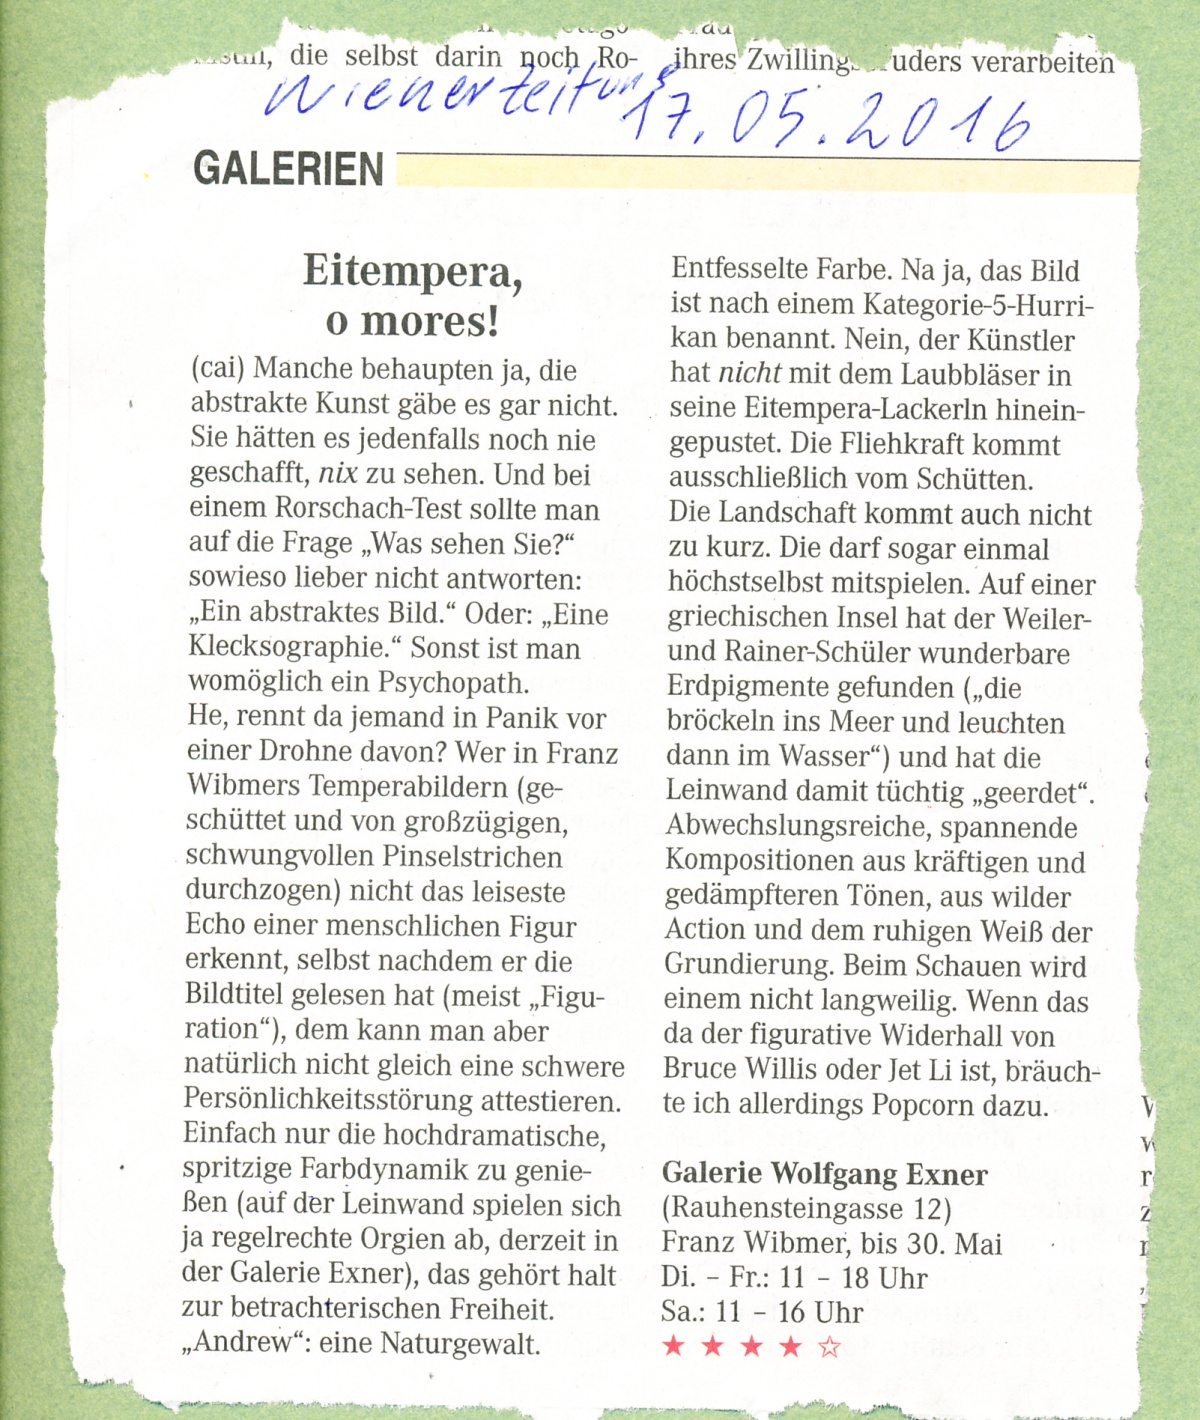 "Eitempera, o mores!", Franz Wibmer, Wiener Zeitung Artikel, 2016